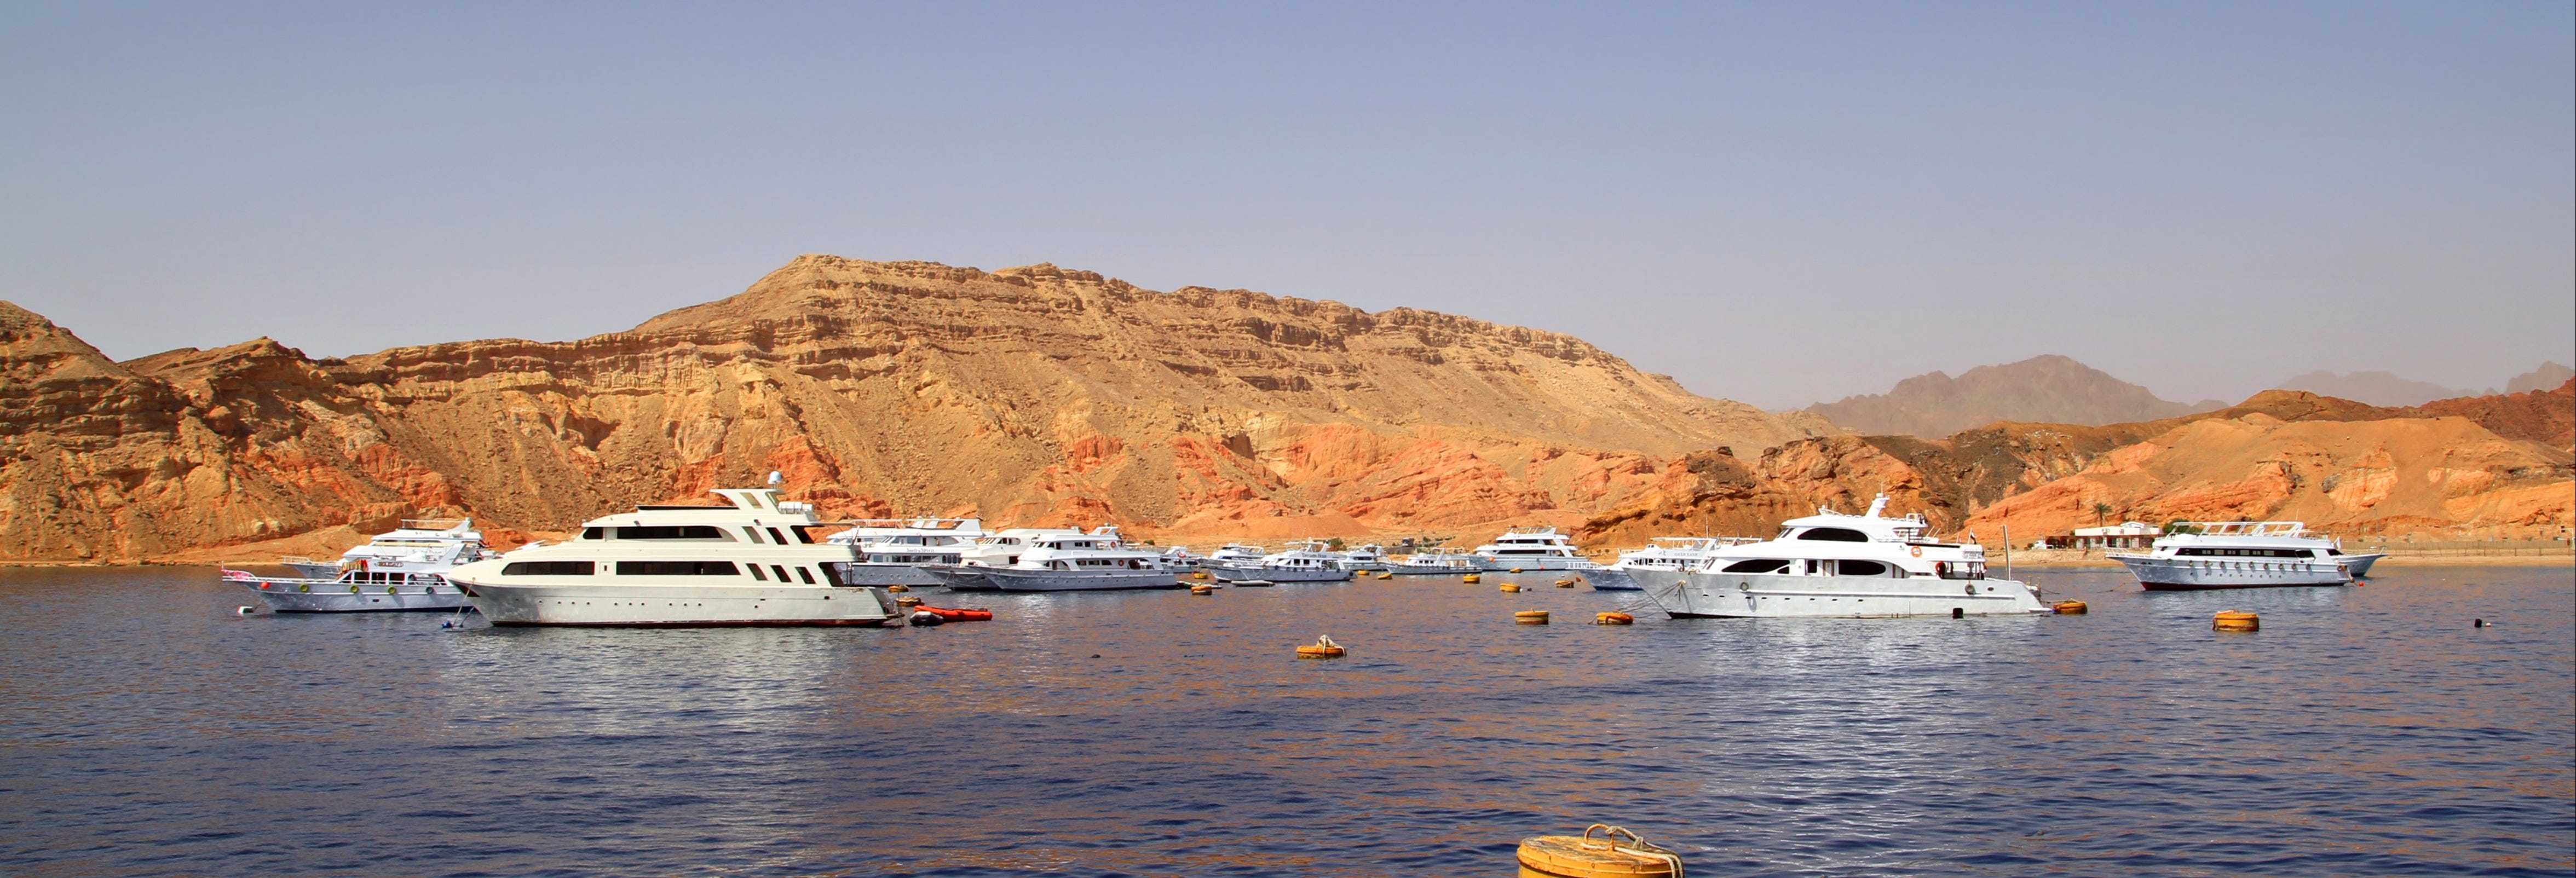 4-Day Lake Nasser Cruise